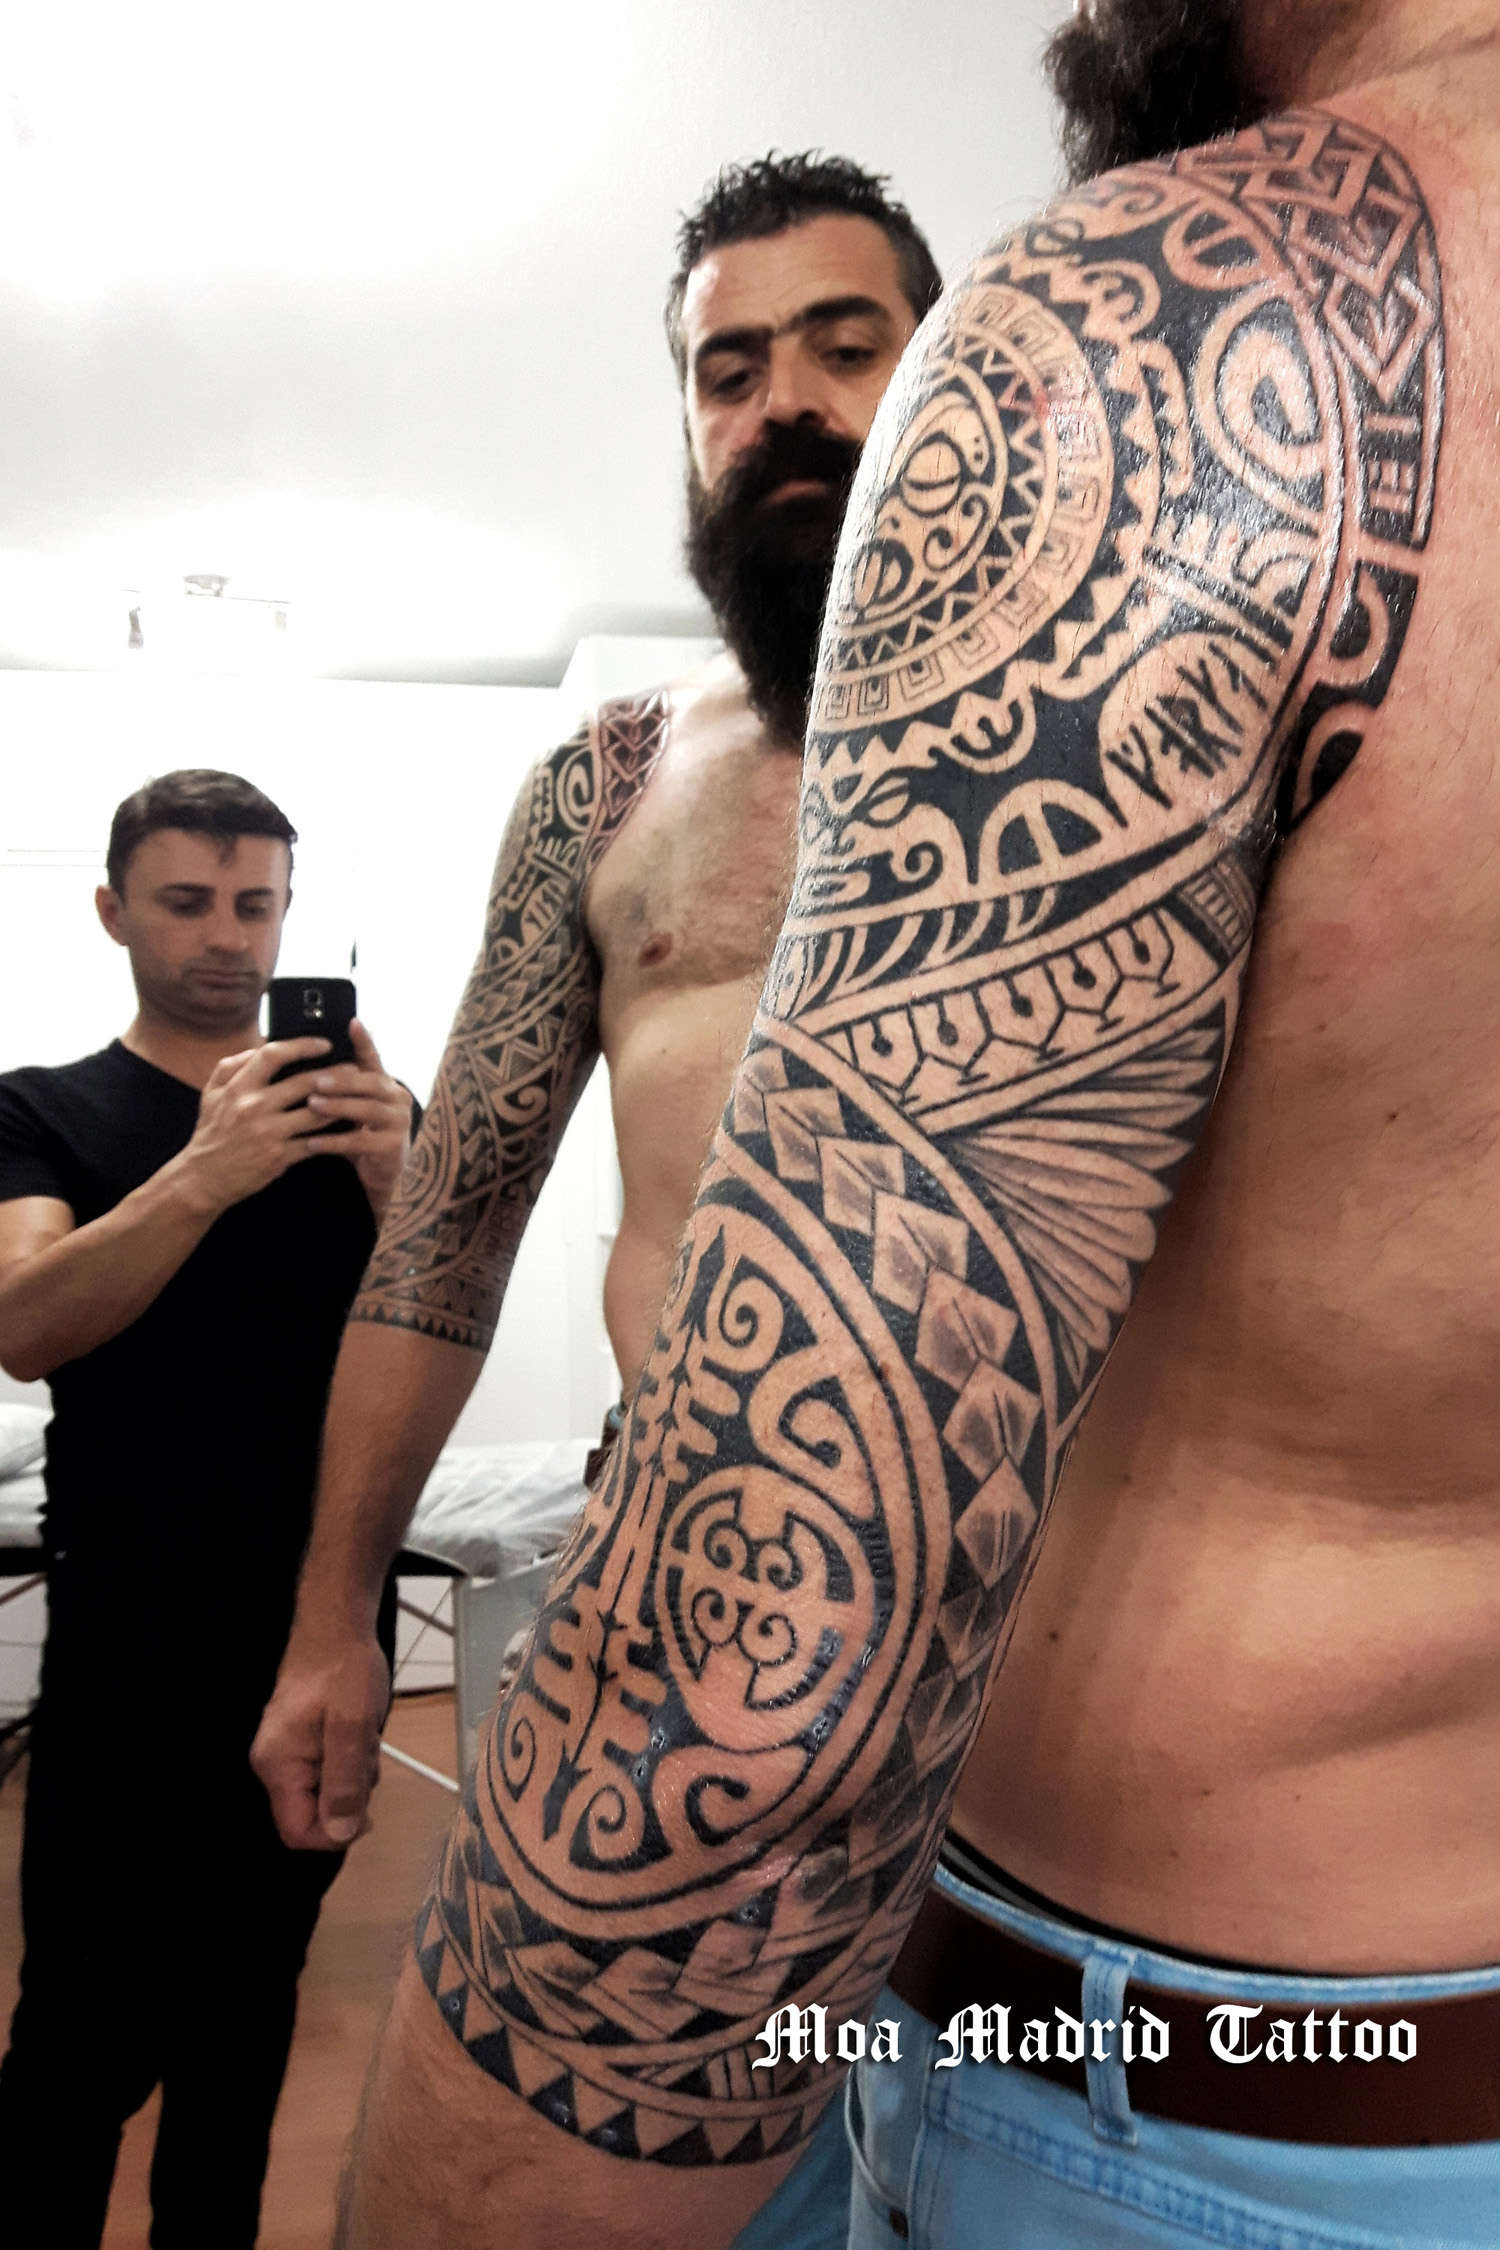 Moa Madrid Tattoo, tatuador maorí en Madrid